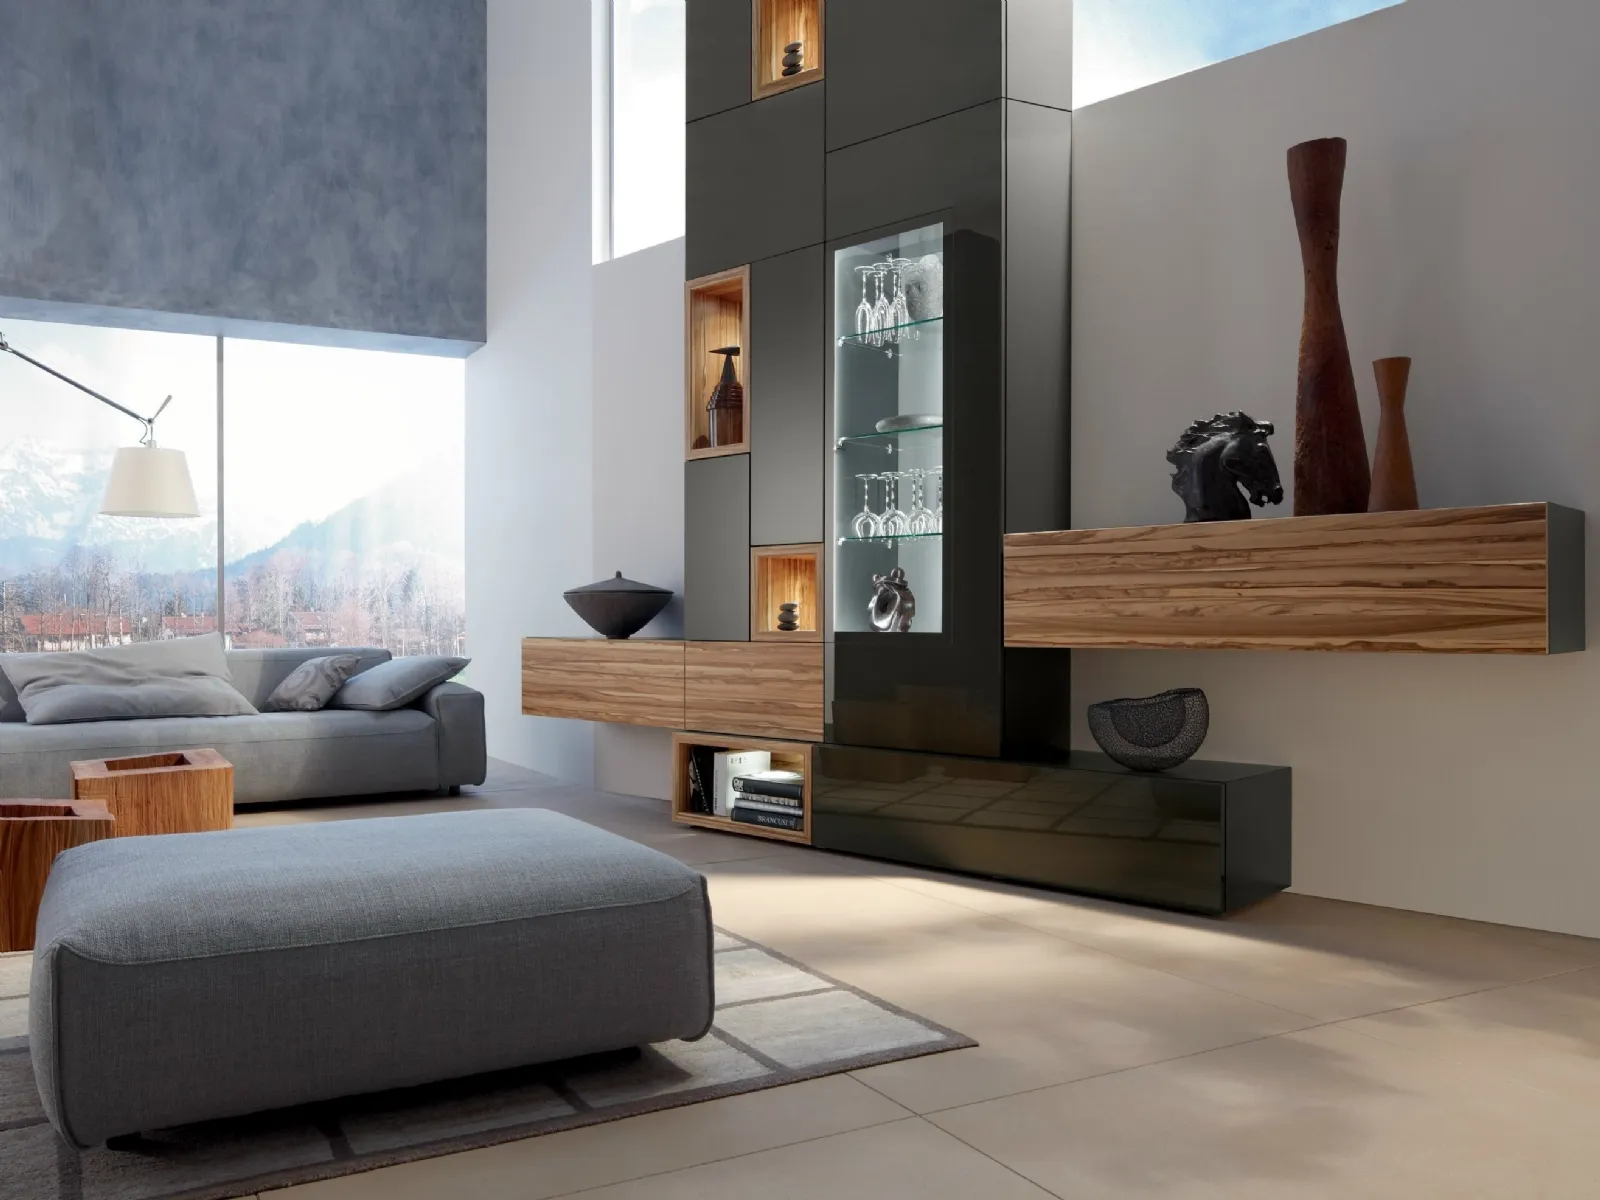 Soggiorni moderni idee e soluzioni mobili soggiorno for Arredamenti soggiorno moderni